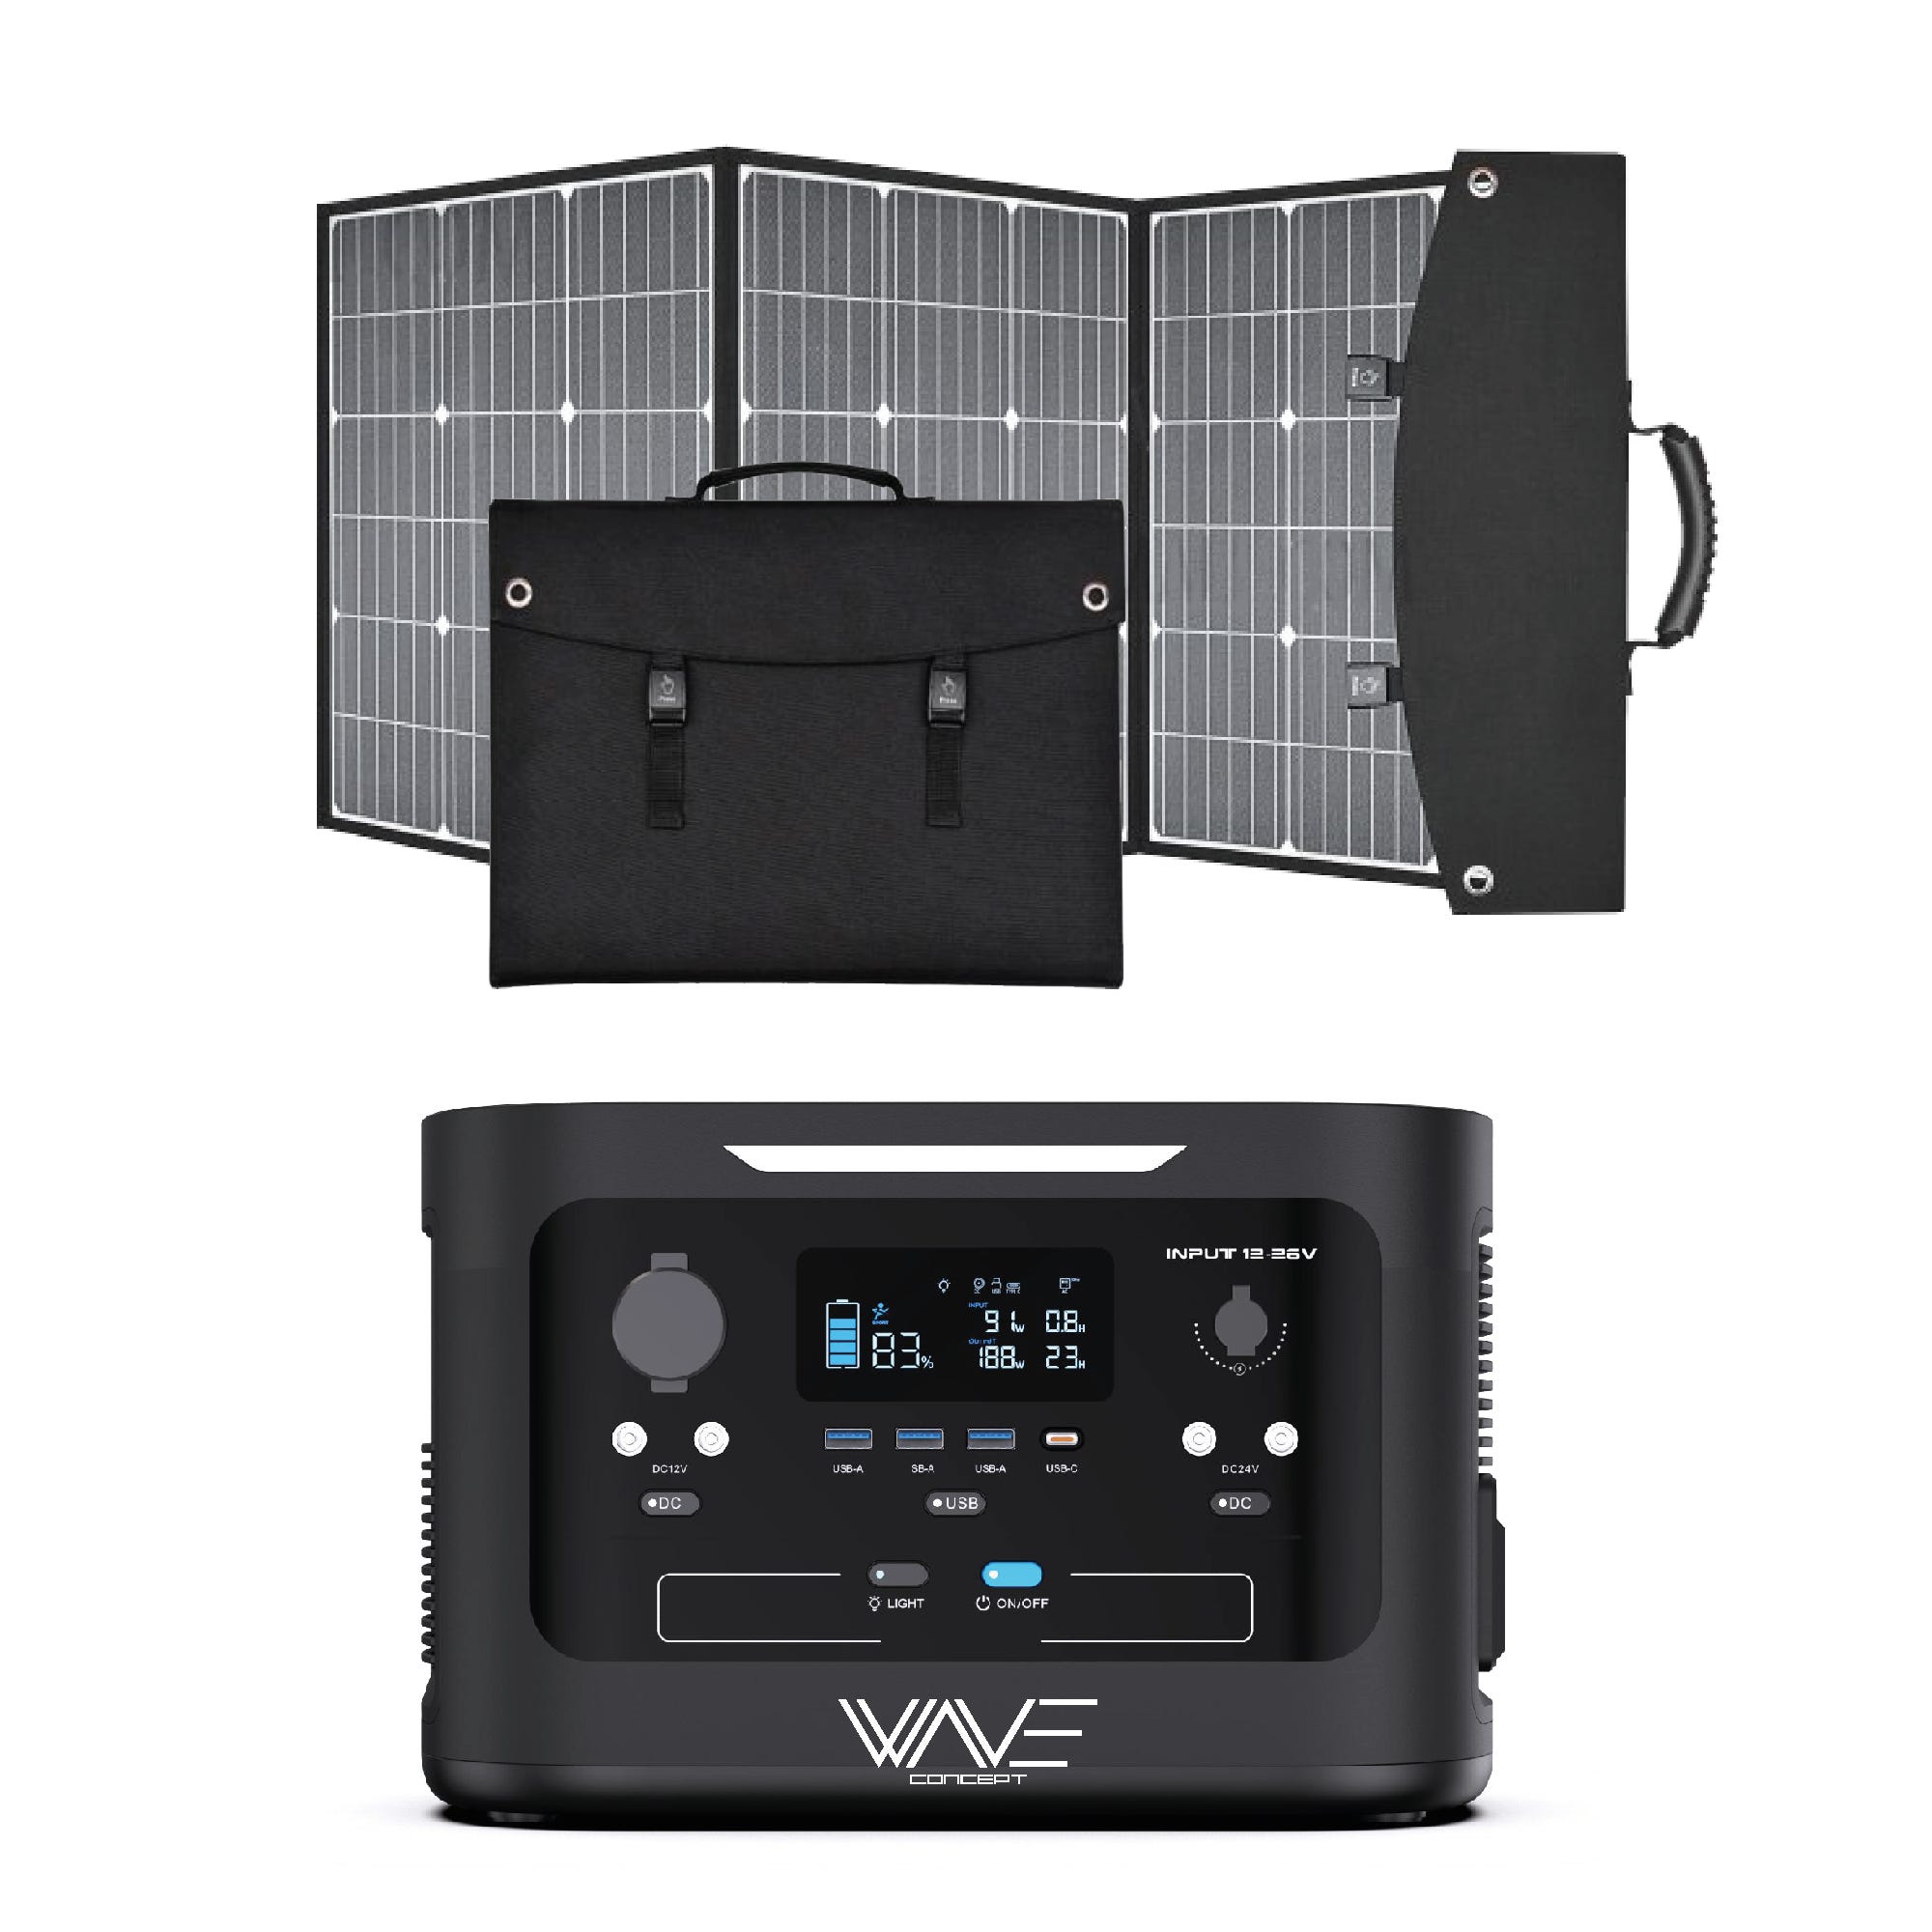 Kit de Générateur solaire portable - Station d'énergie 600W + Panneau  solaire 100W - Wave Concept